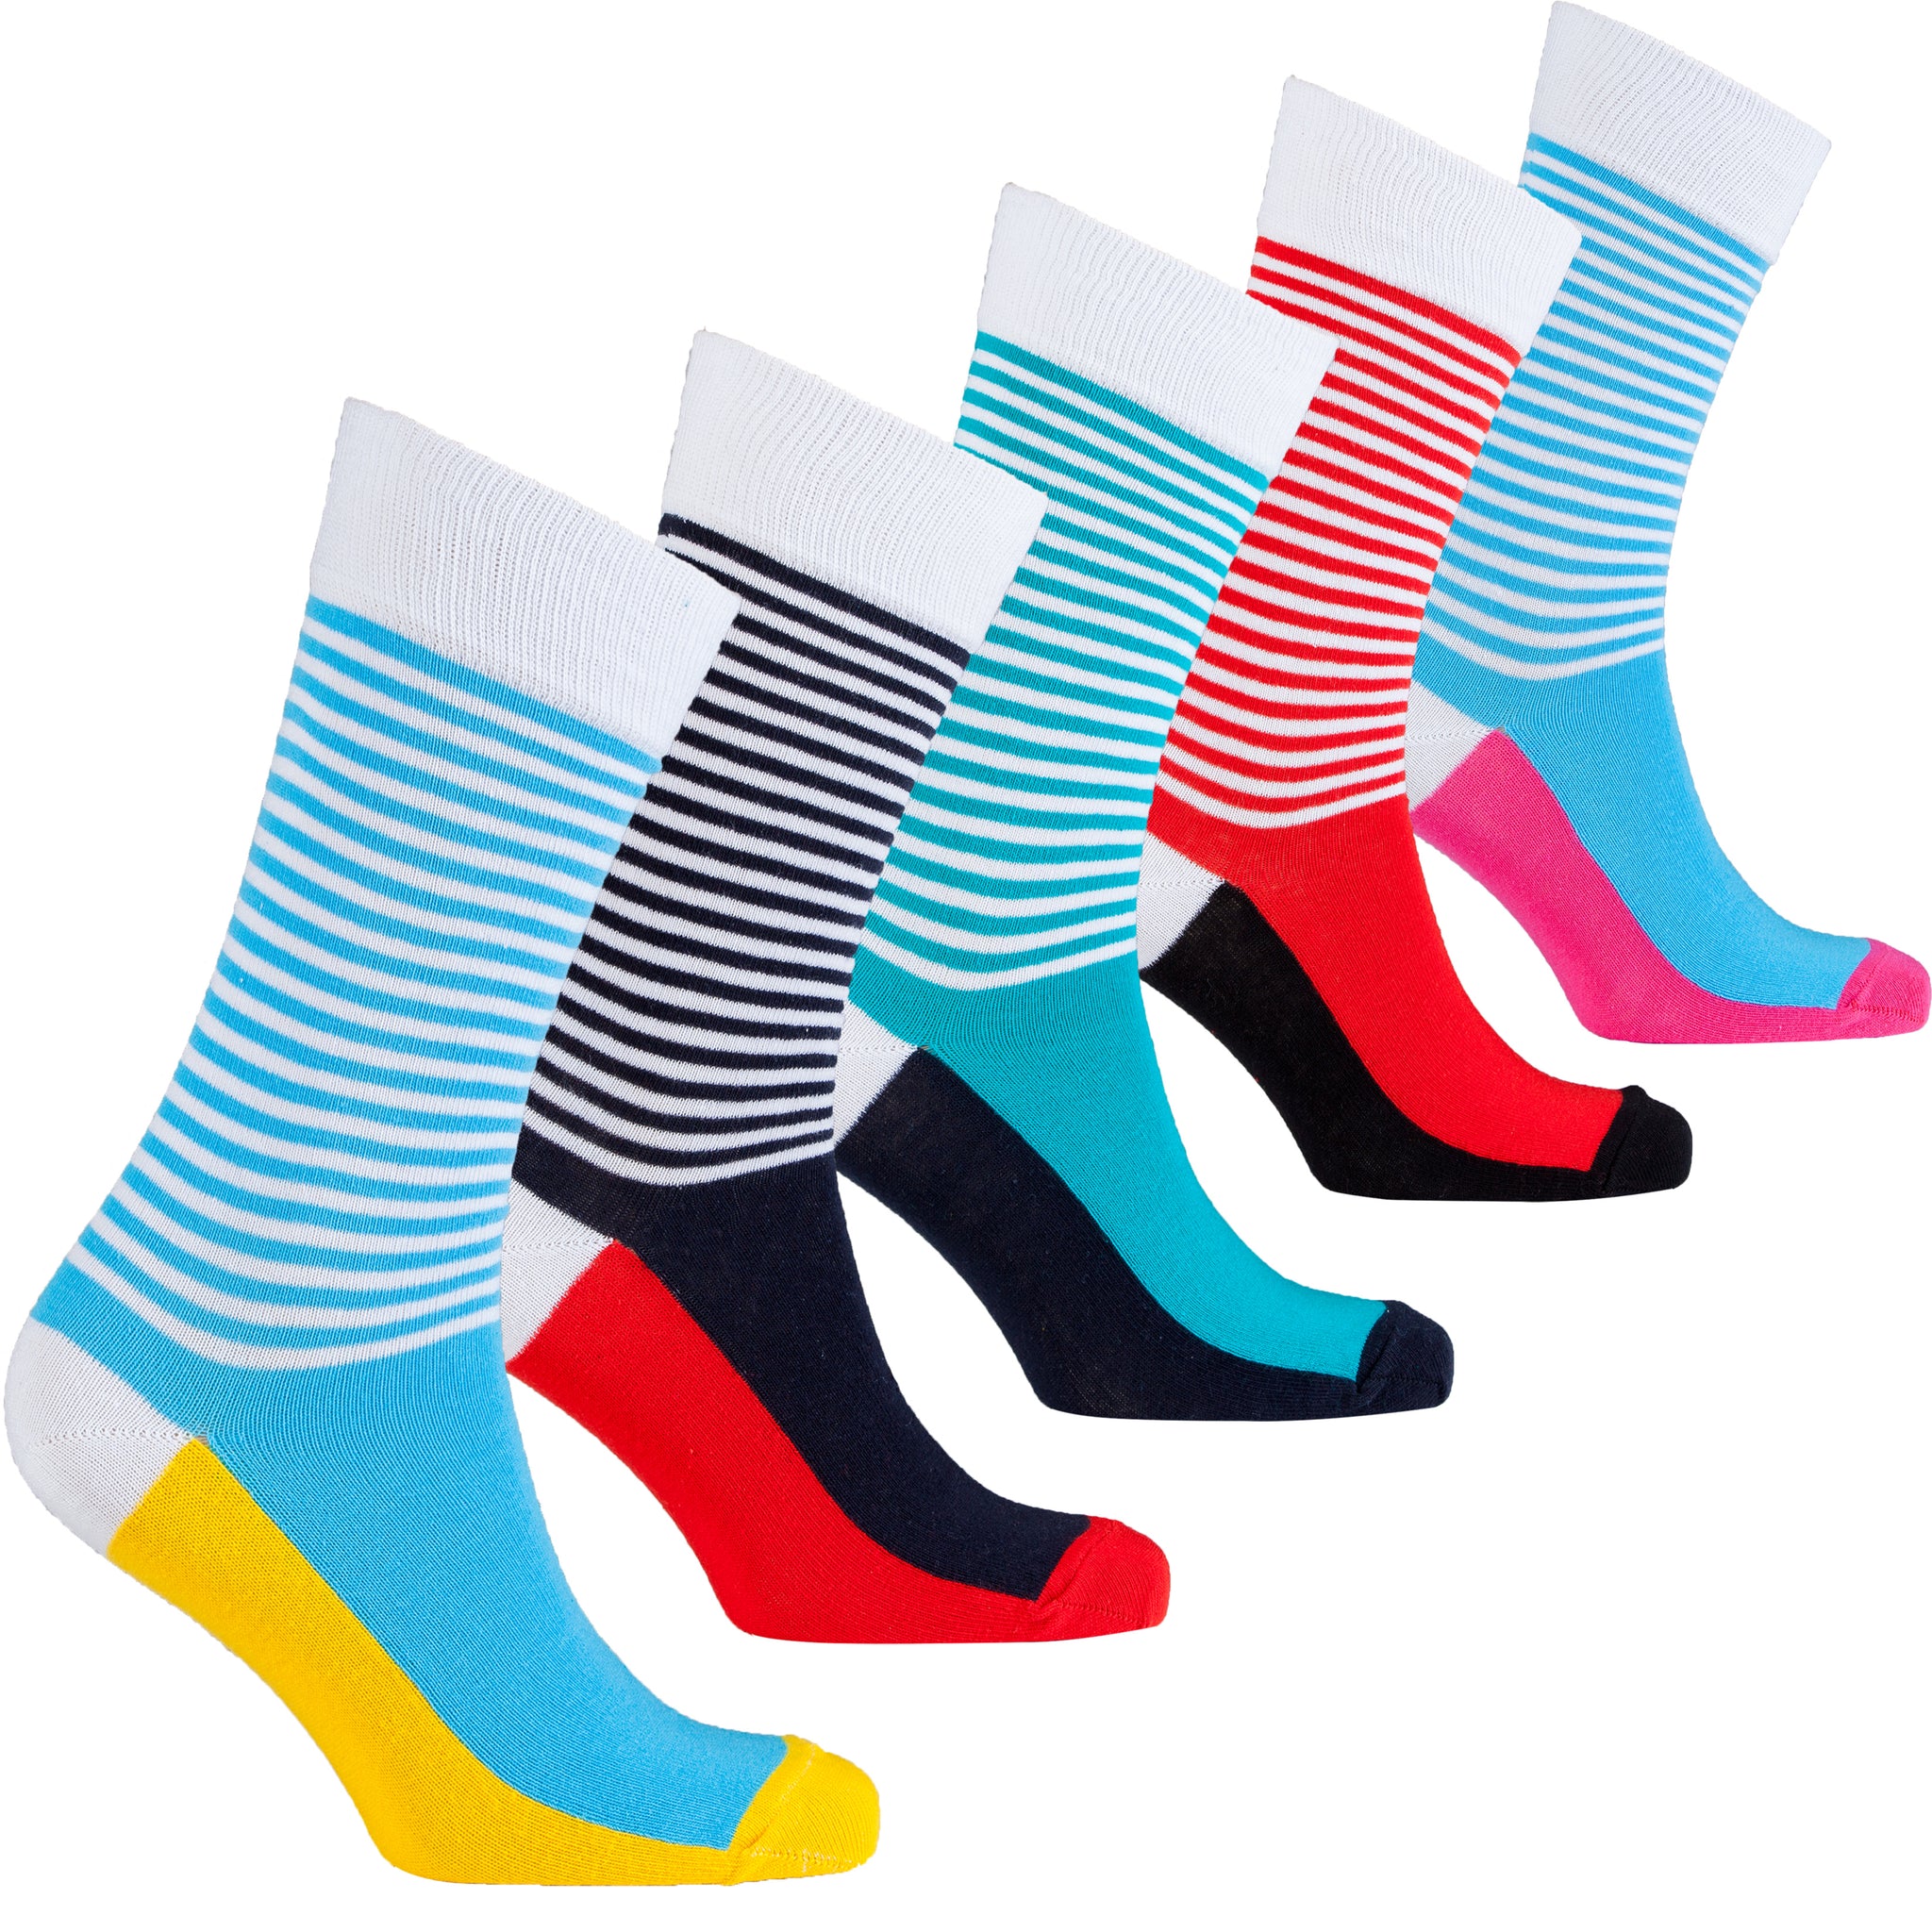 Men's Classic Stripes Socks